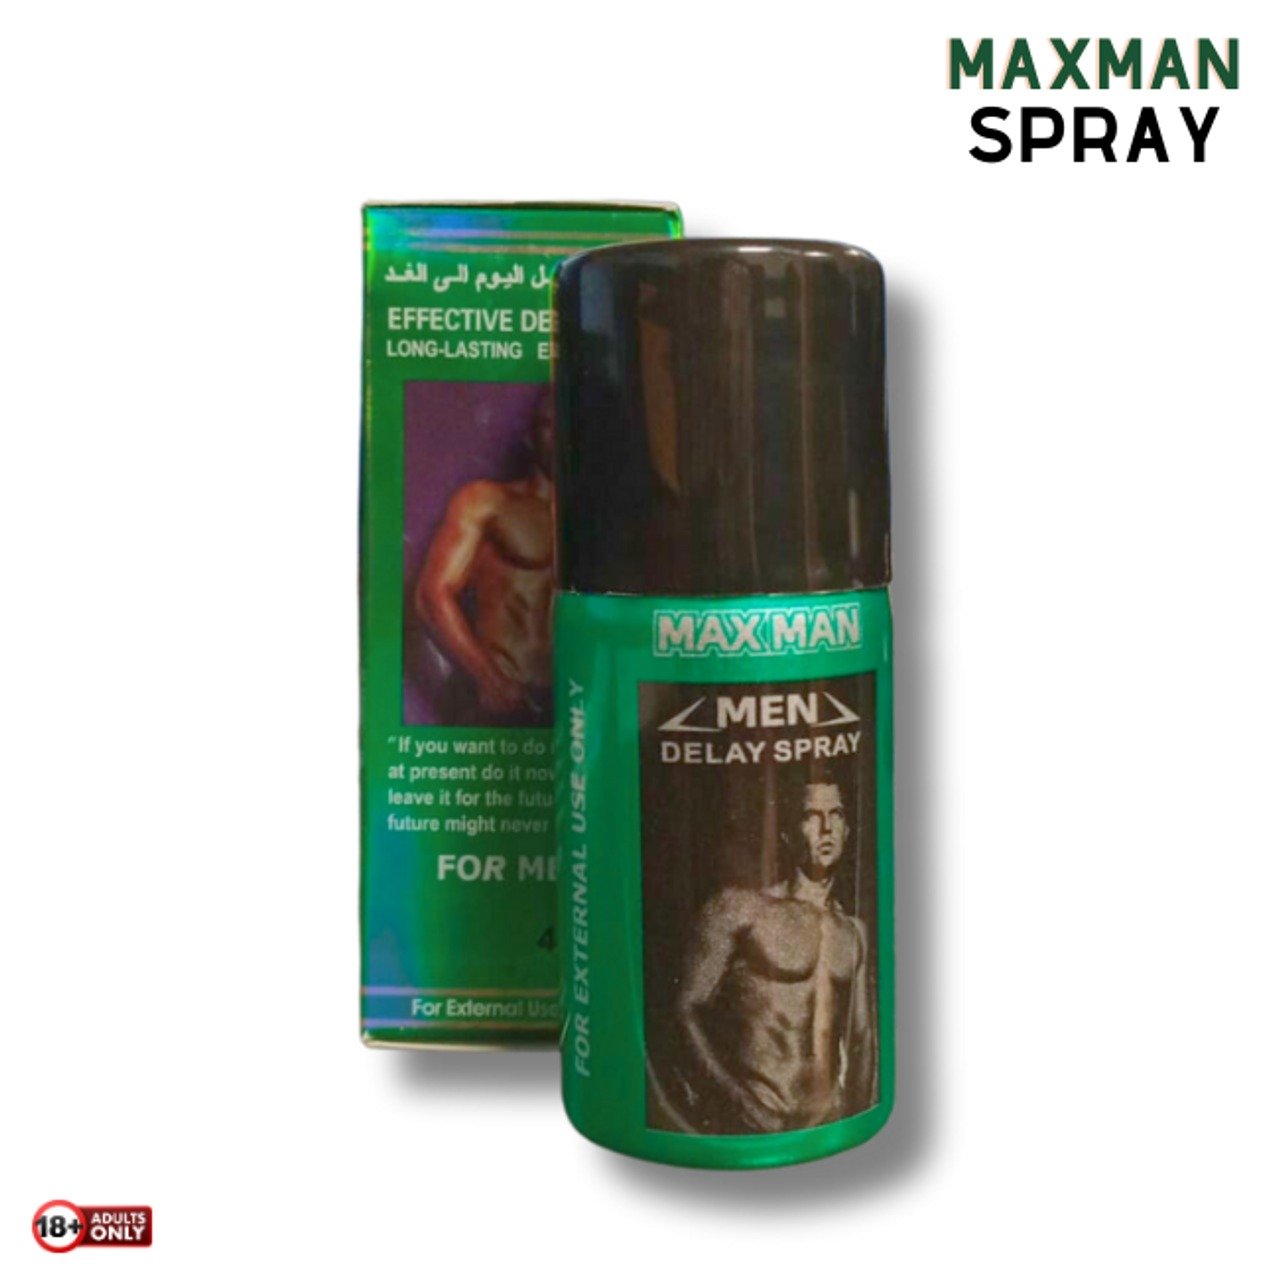 Maxman Effective Long-lasting Delay Spray